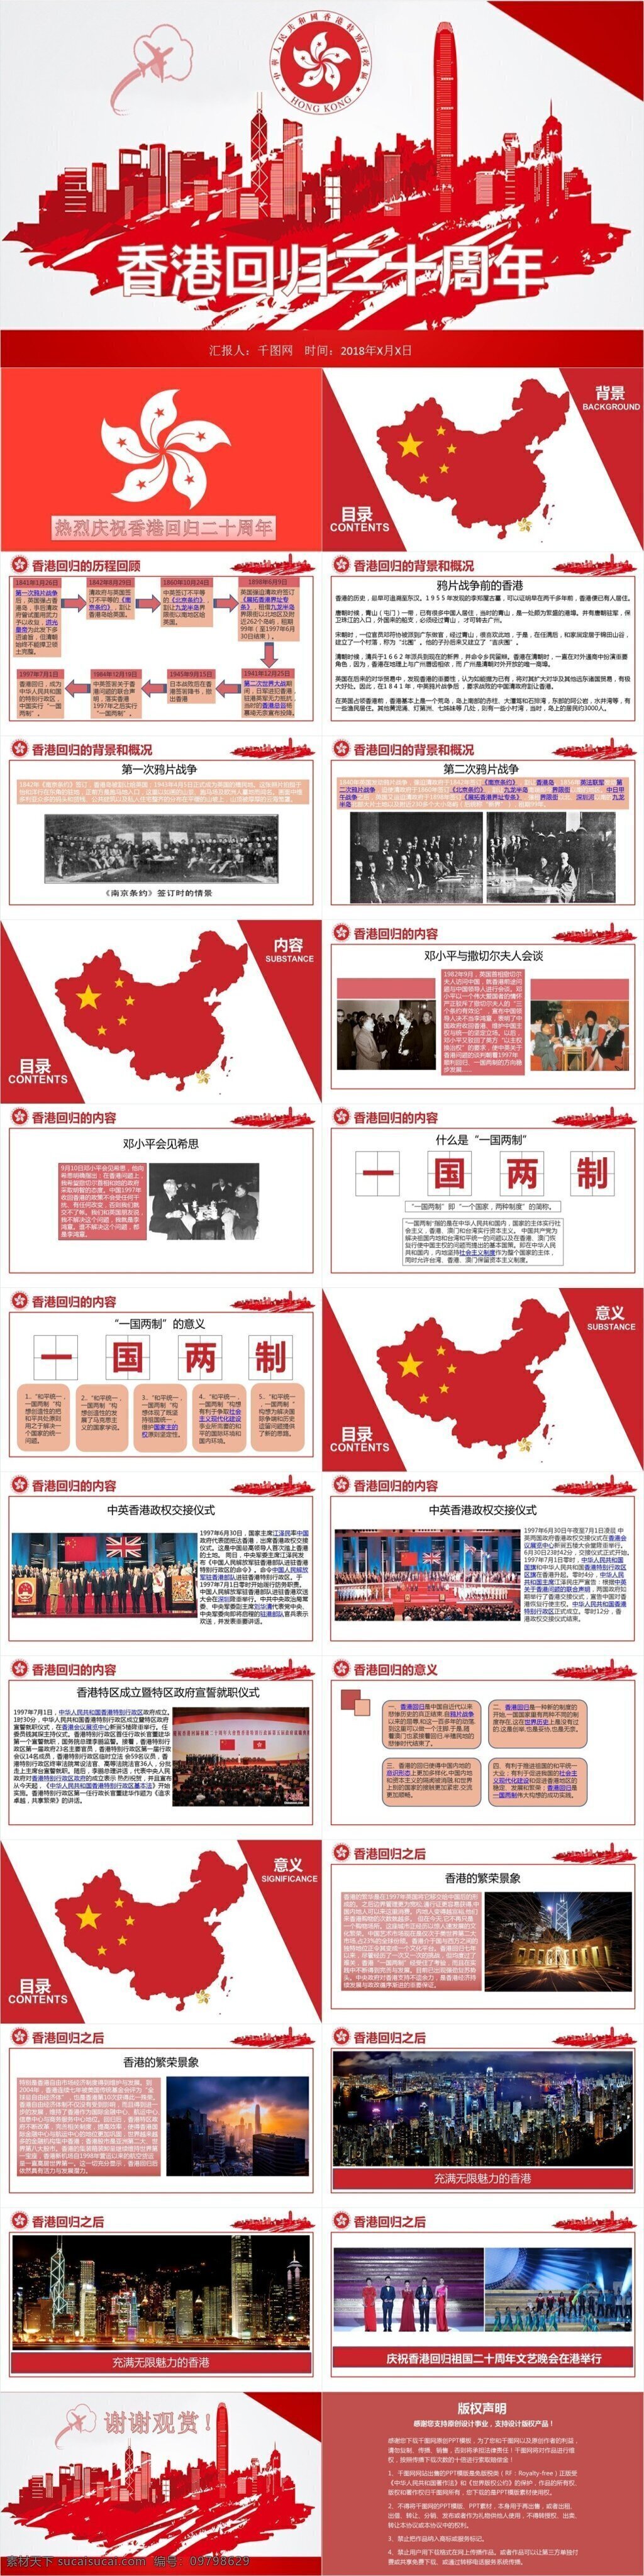 中国 红党 建 香港 回归 周年 ptp 模板 政府党建 红色 简约 内容丰富 可直接套用 大气